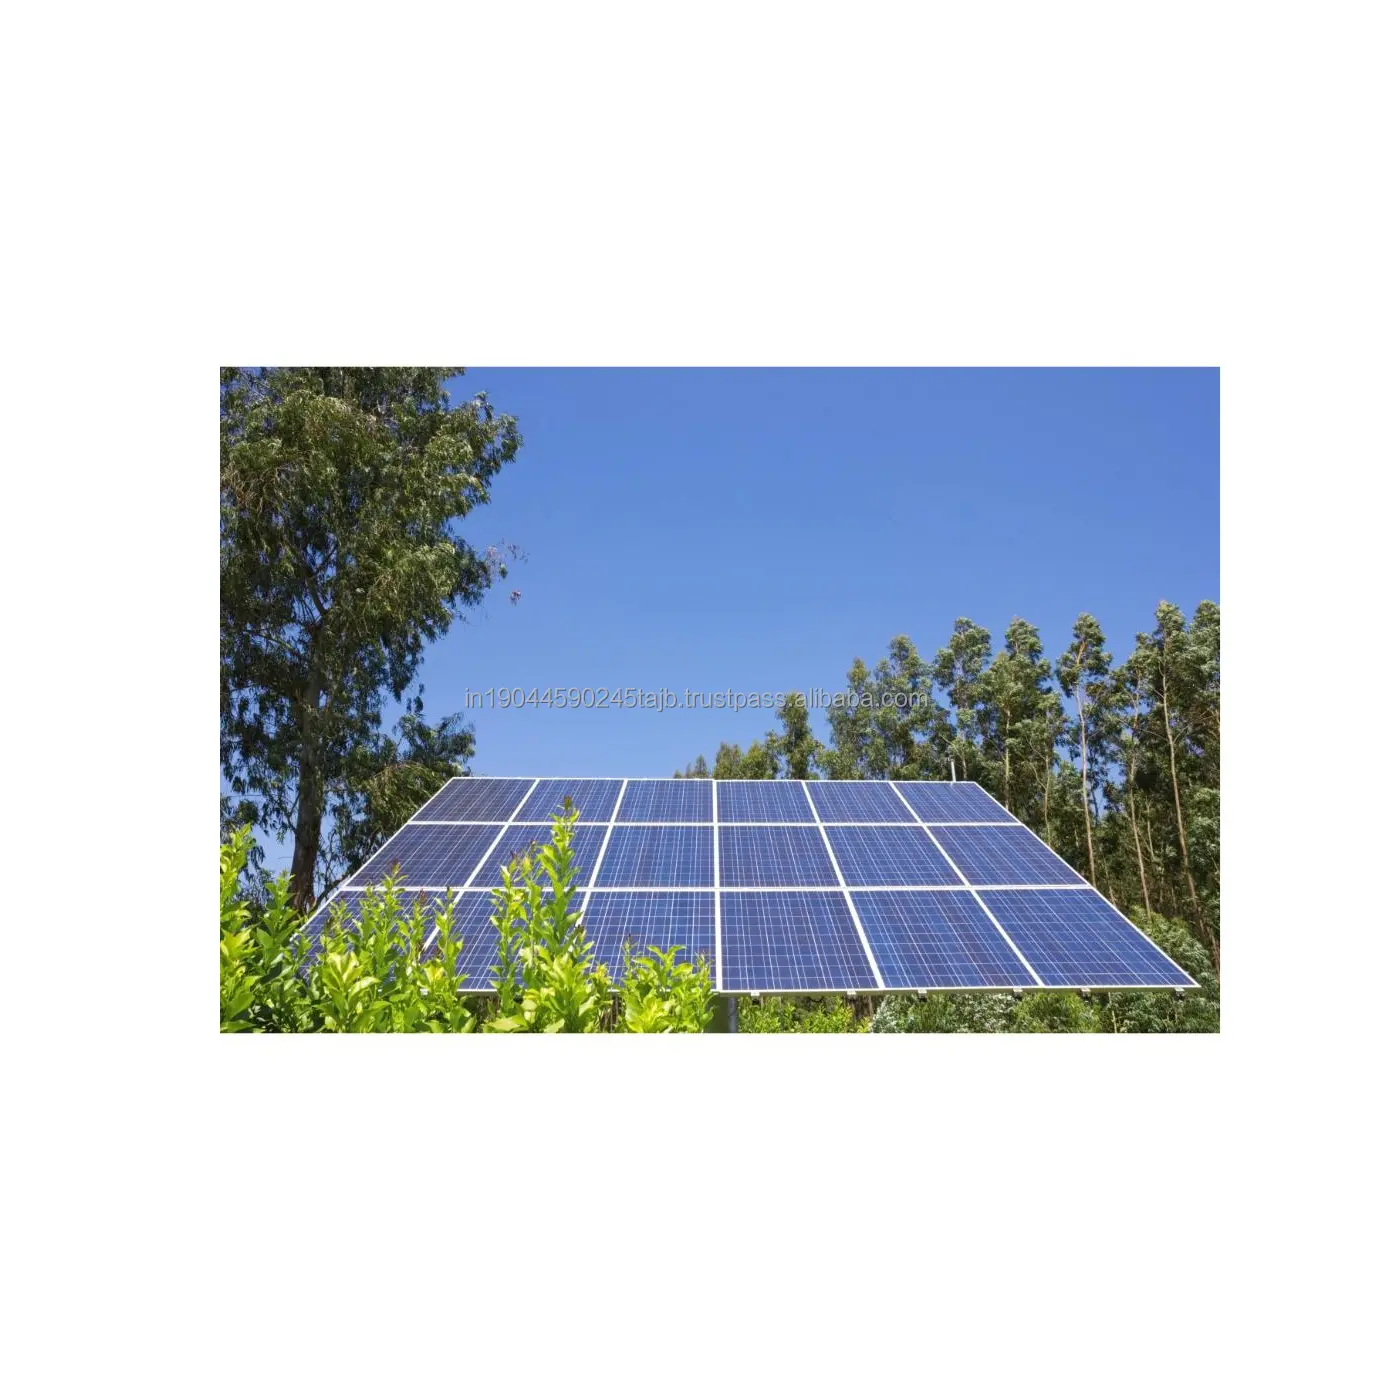 교육 센터 및 의료 클리닉을위한 현장 준비 내화 태양 전지 패널 저렴한 가격으로 대량 수출 가능